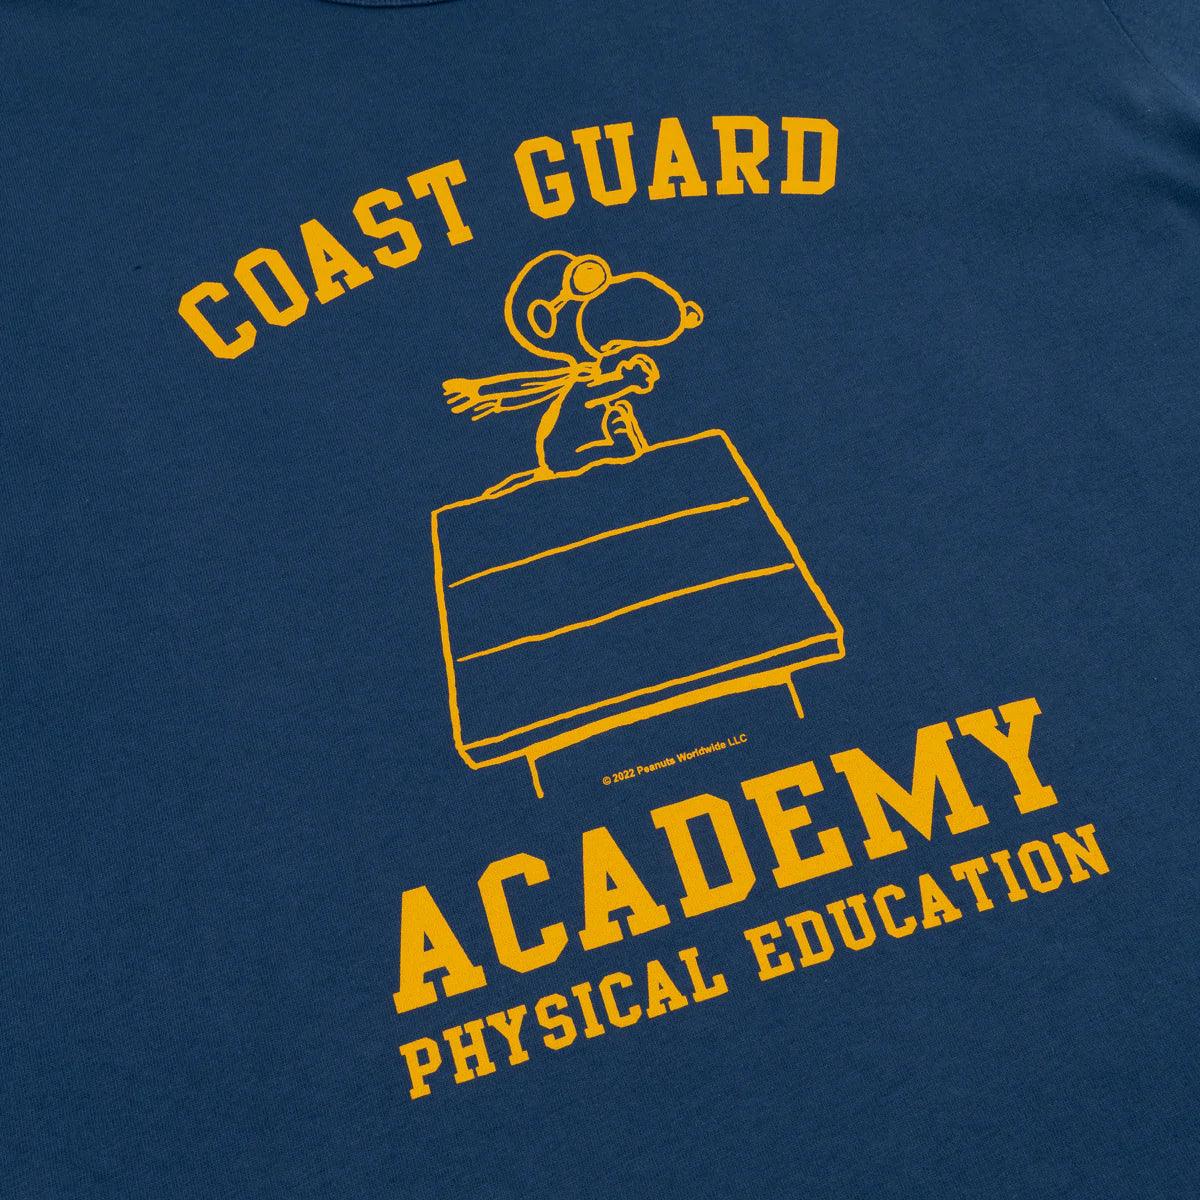 Camiseta Coast Guard - ECRU